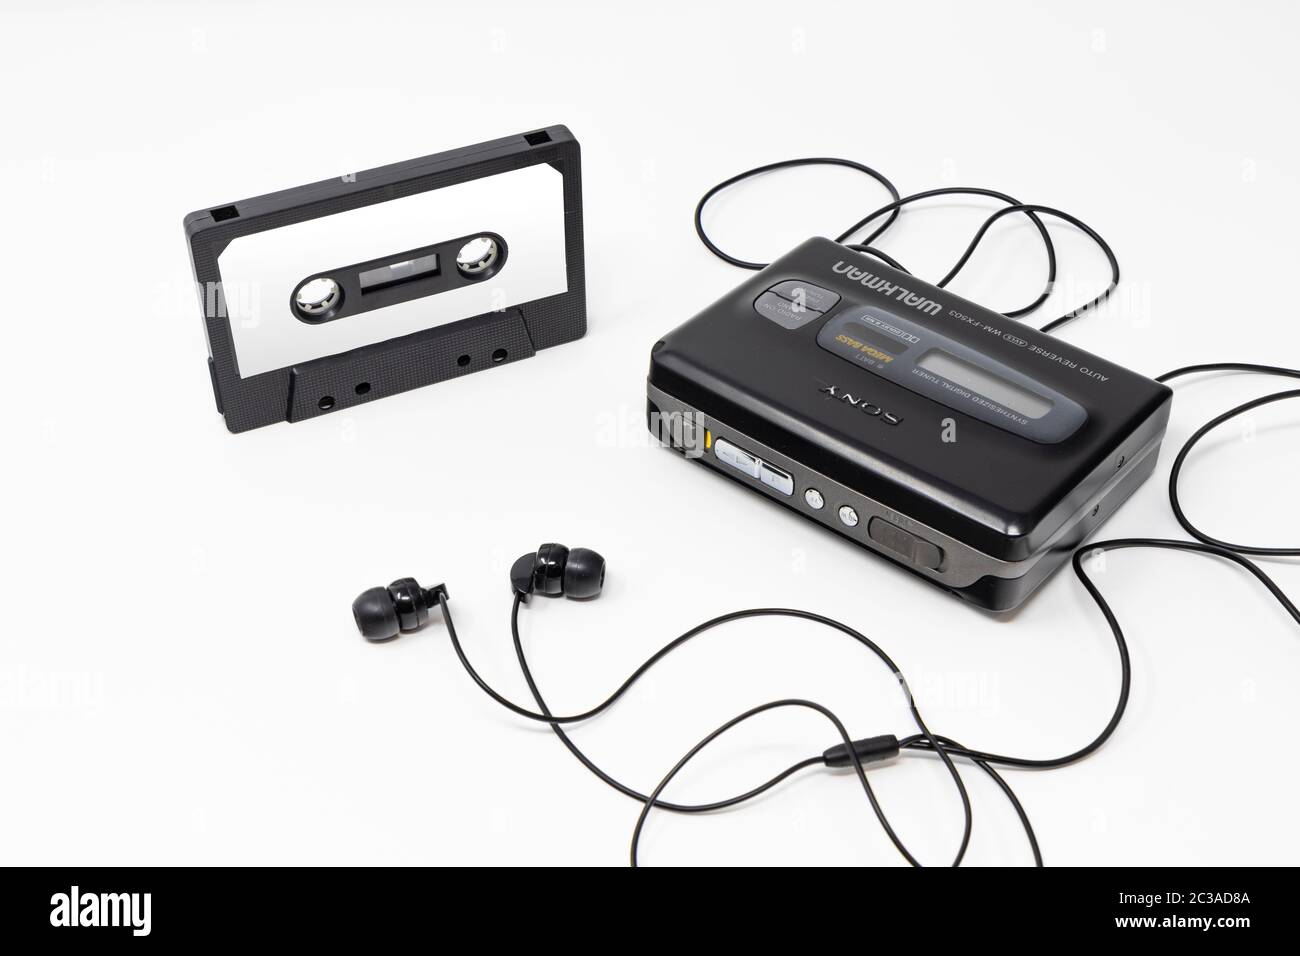 5 mars 2019 - Rome, Lazio, Italie - le walkman original de sony, lecteur de cassettes portable d'époque, icône et symbole des années 80 et 90. Cassette audio vierge Banque D'Images